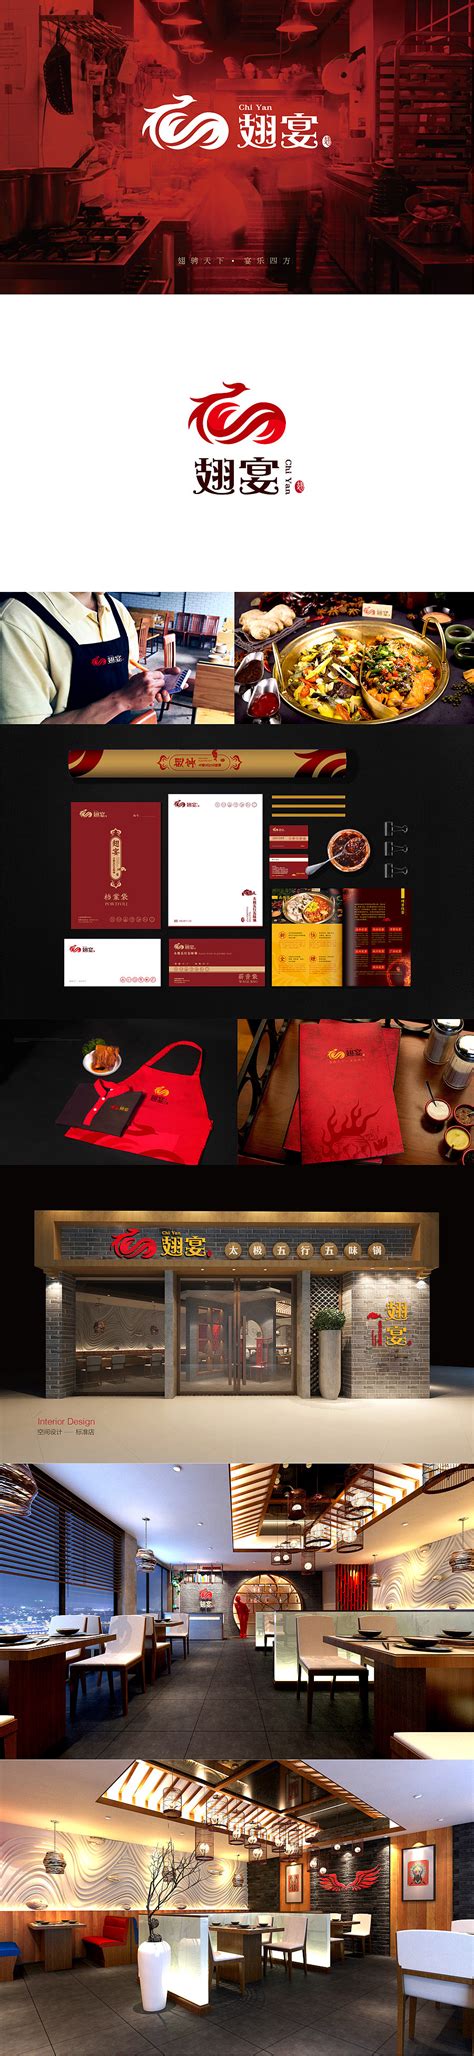 连锁餐饮品牌全案策划与品牌SI空间设计升级 - 武汉logo|品牌策划-宣传册|画册设计-vi设计-艾的尔设计